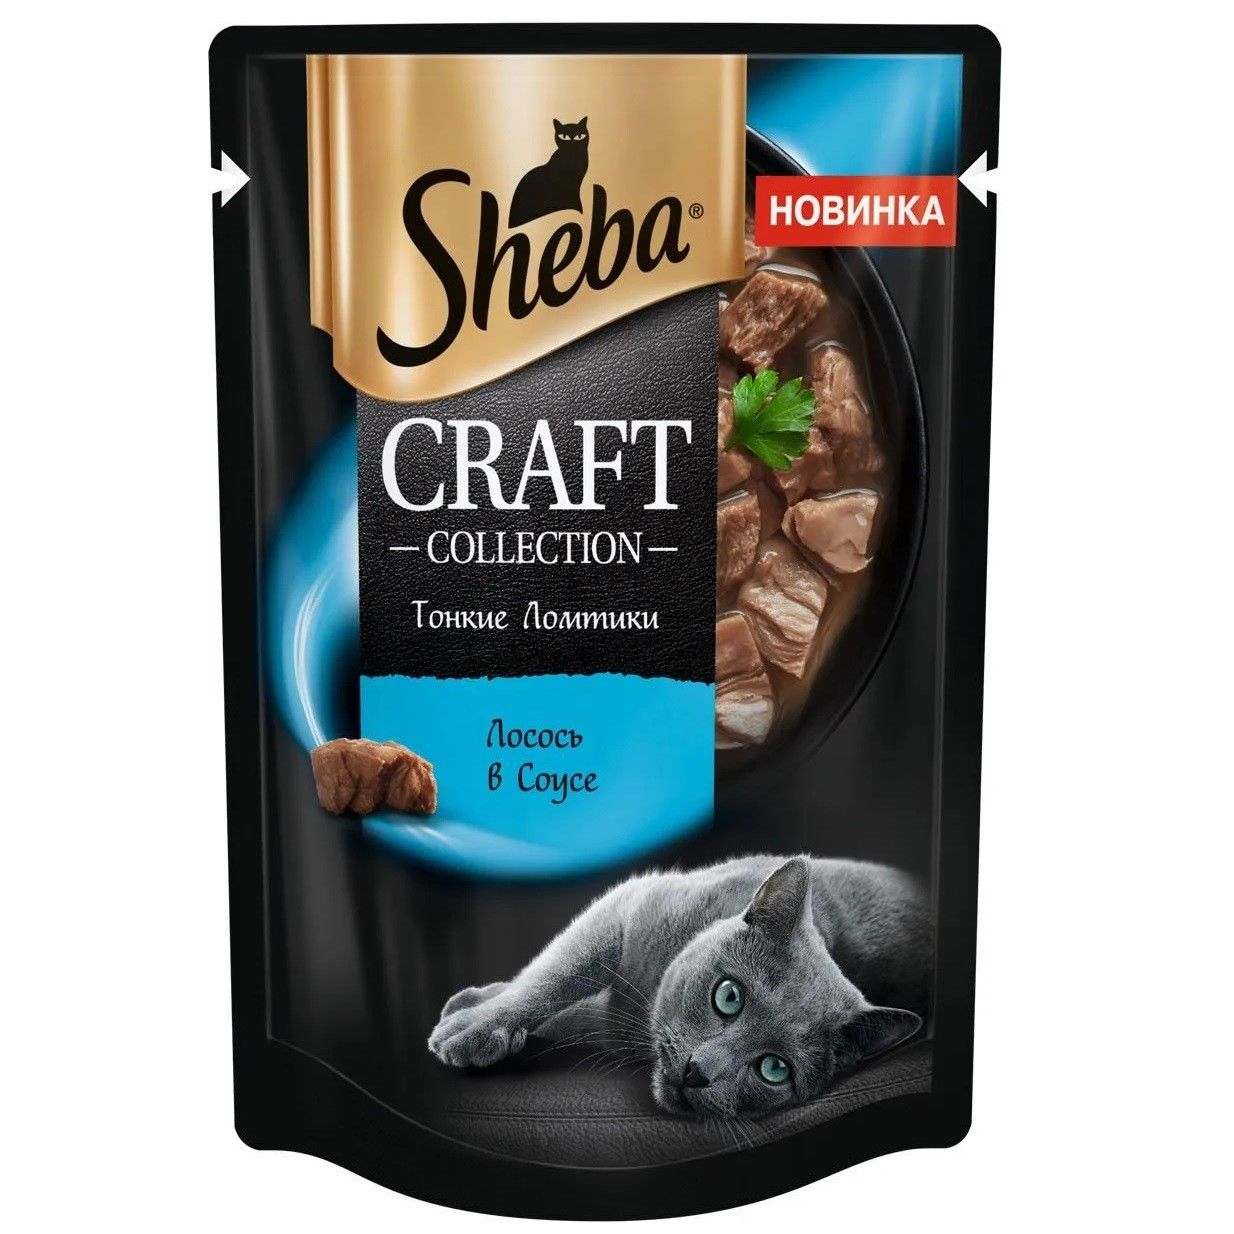 Корм для кошек SHEBA Craft Collection, лосось в соусе, 75 г